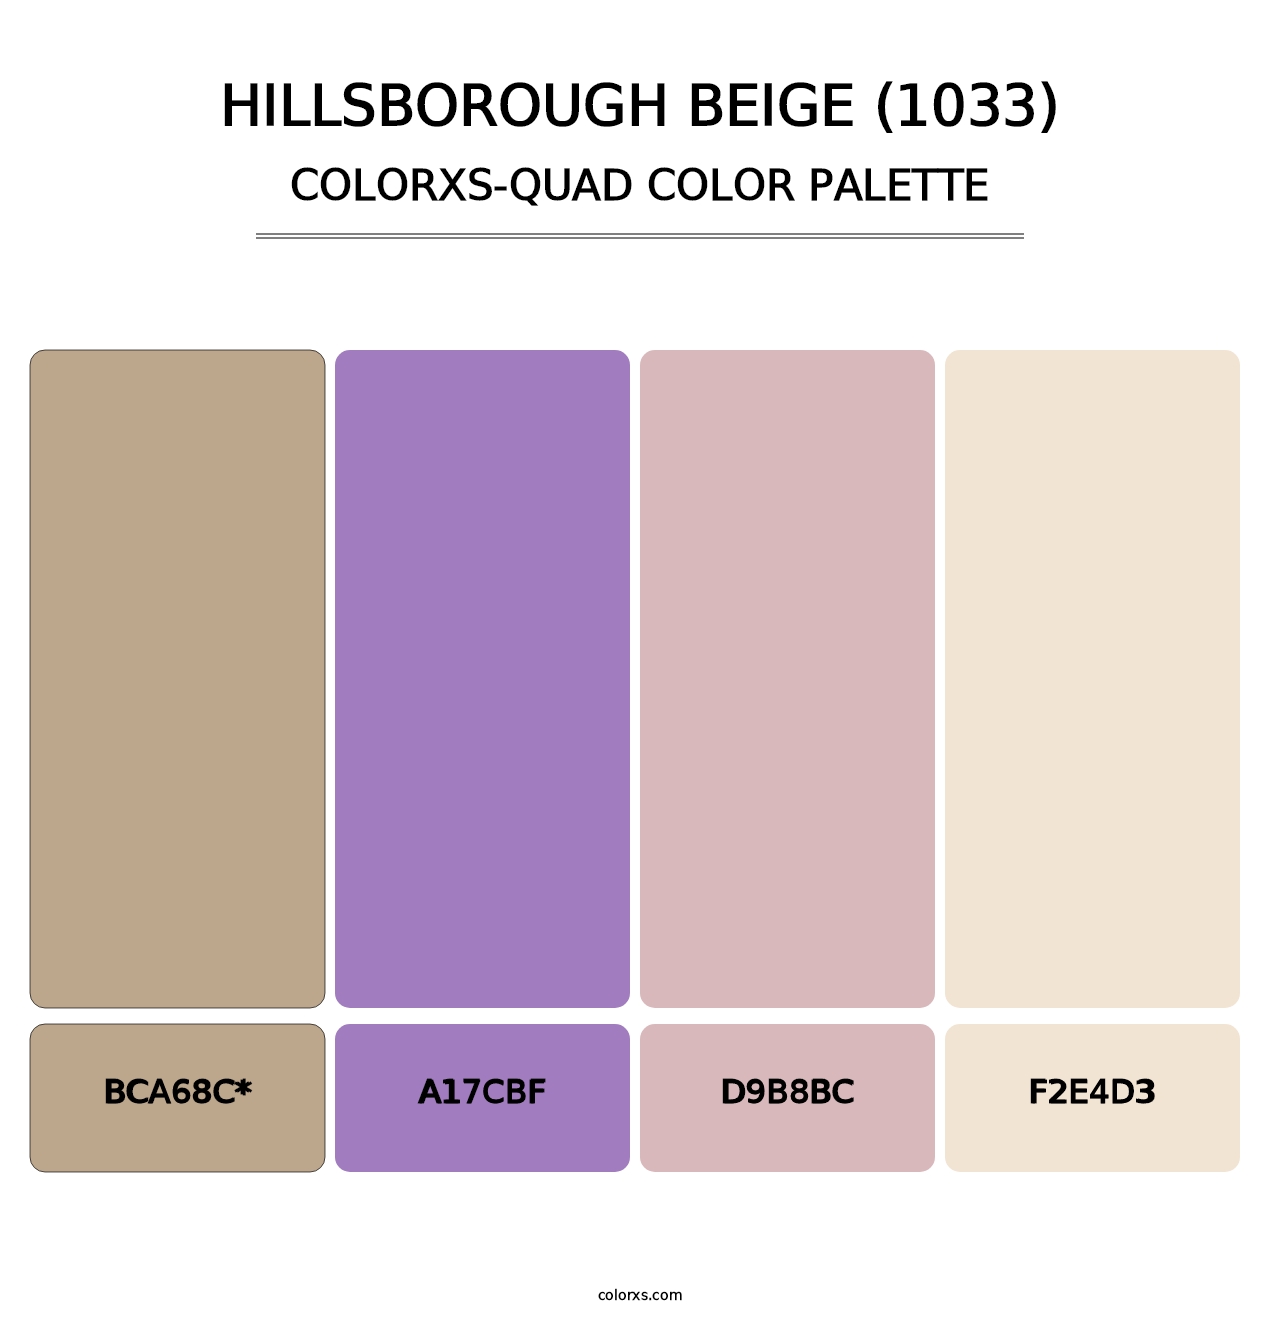 Hillsborough Beige (1033) - Colorxs Quad Palette